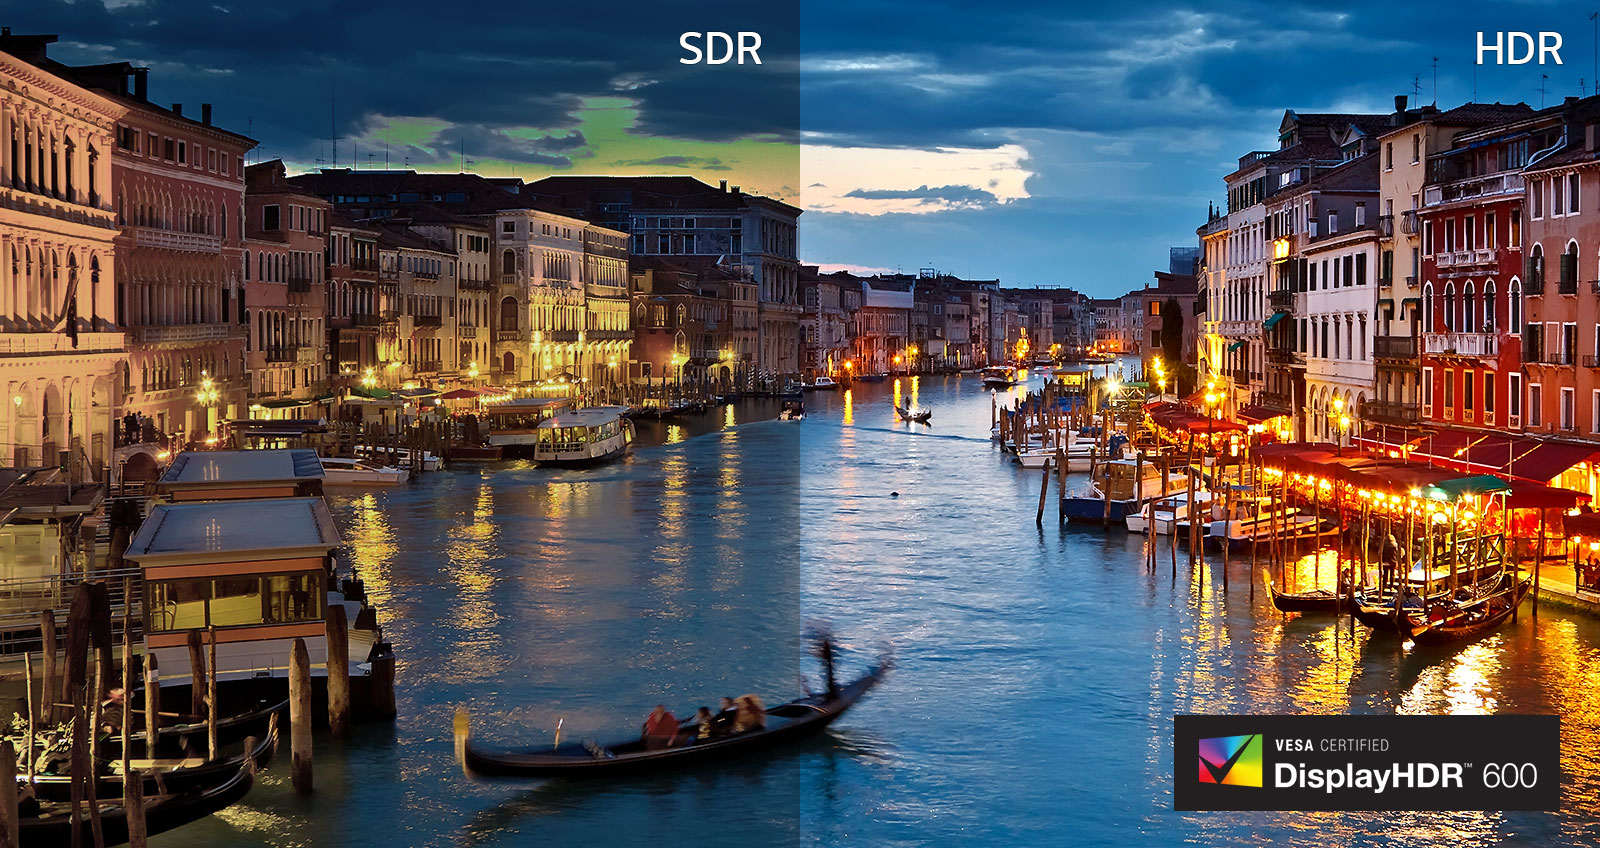 Hình ảnh SDR so với HDR (Hình ảnh LOGO) CÓ CHỨNG NHẬN VESA CERTIFIED  I  DisplayHDR™ 600